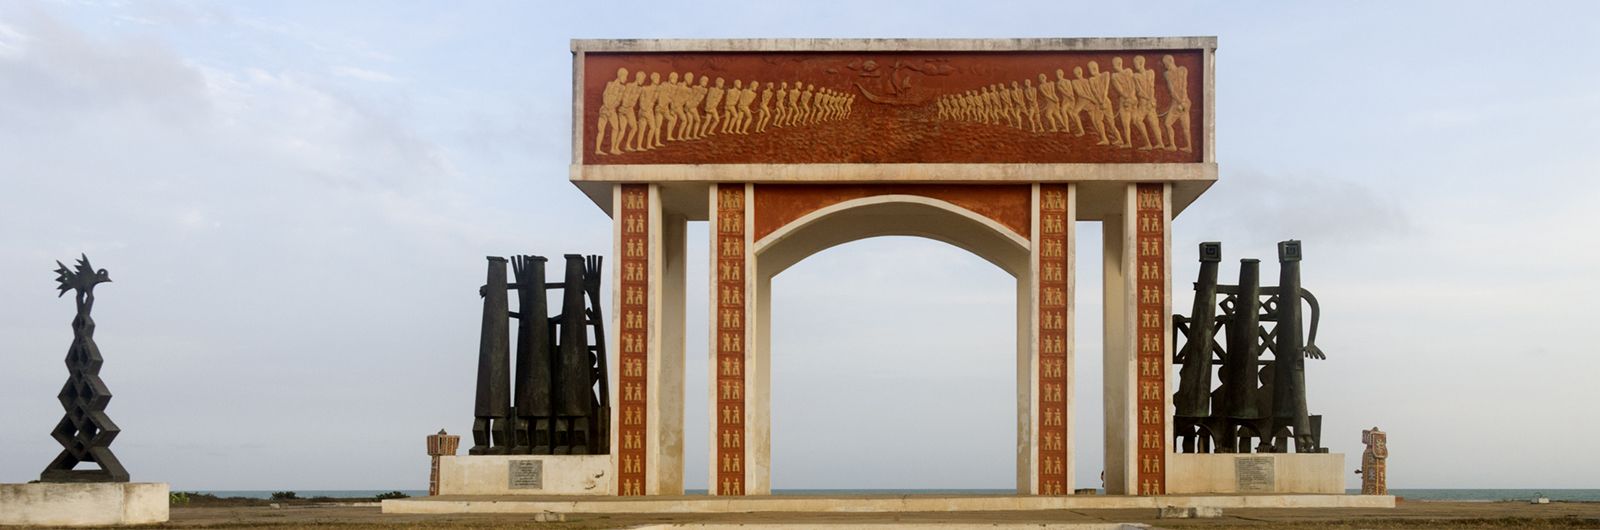 ouidah y la puerta del no retorno de los esclavos